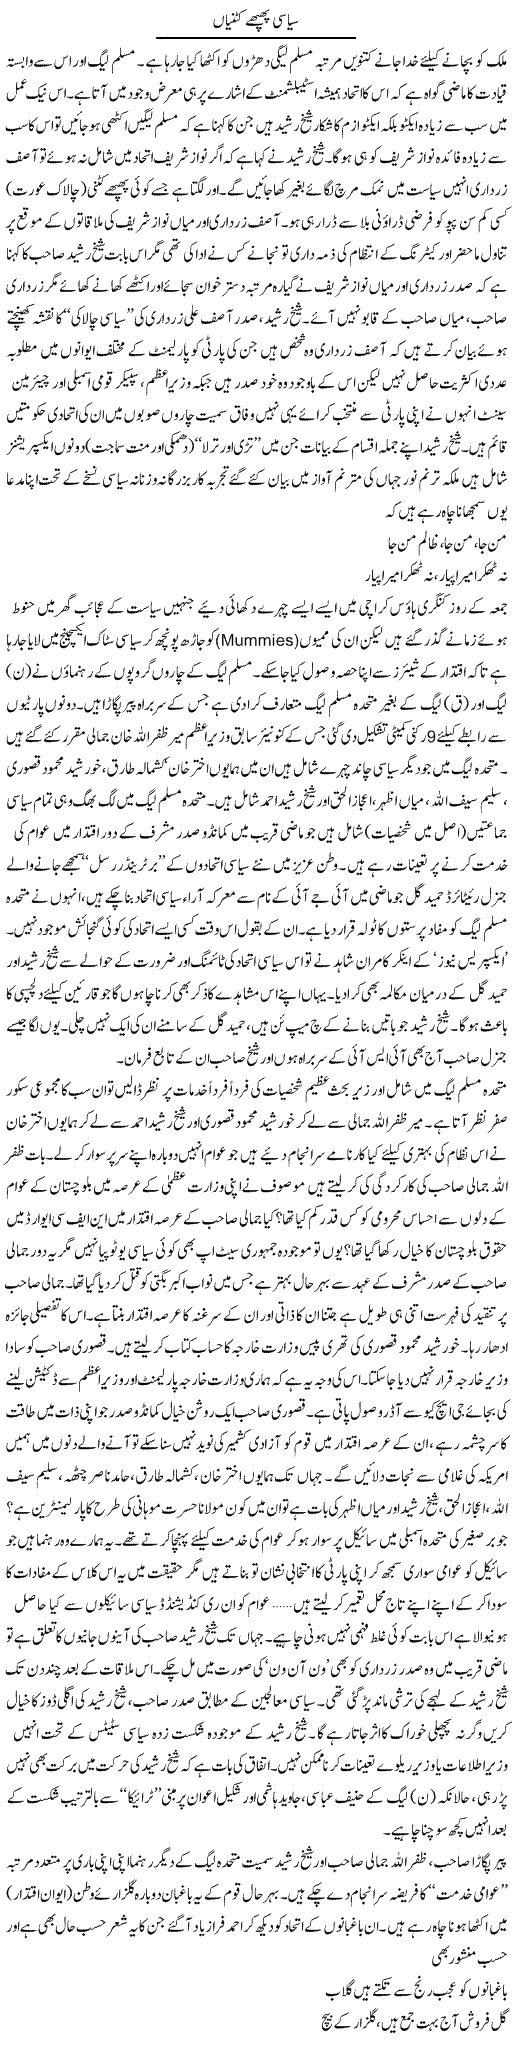 Political Plans Express Column Tahir Sarwar 1 November 2010